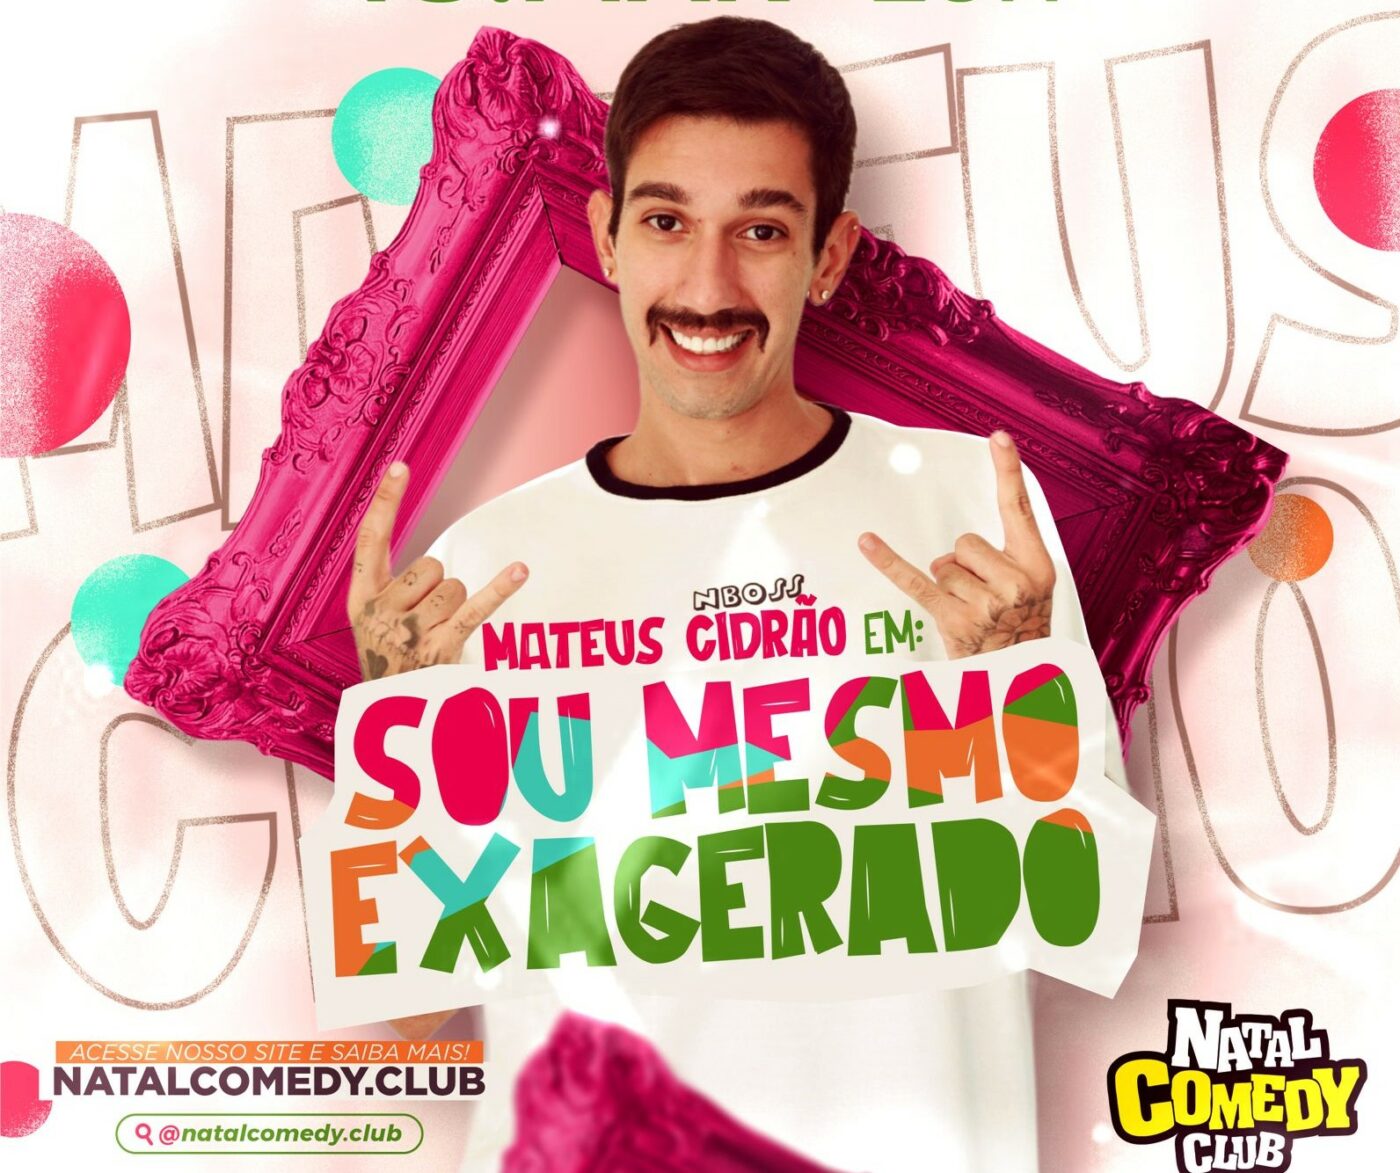 Mateus Cidrão é uma das atrações do Natal Comedy Club